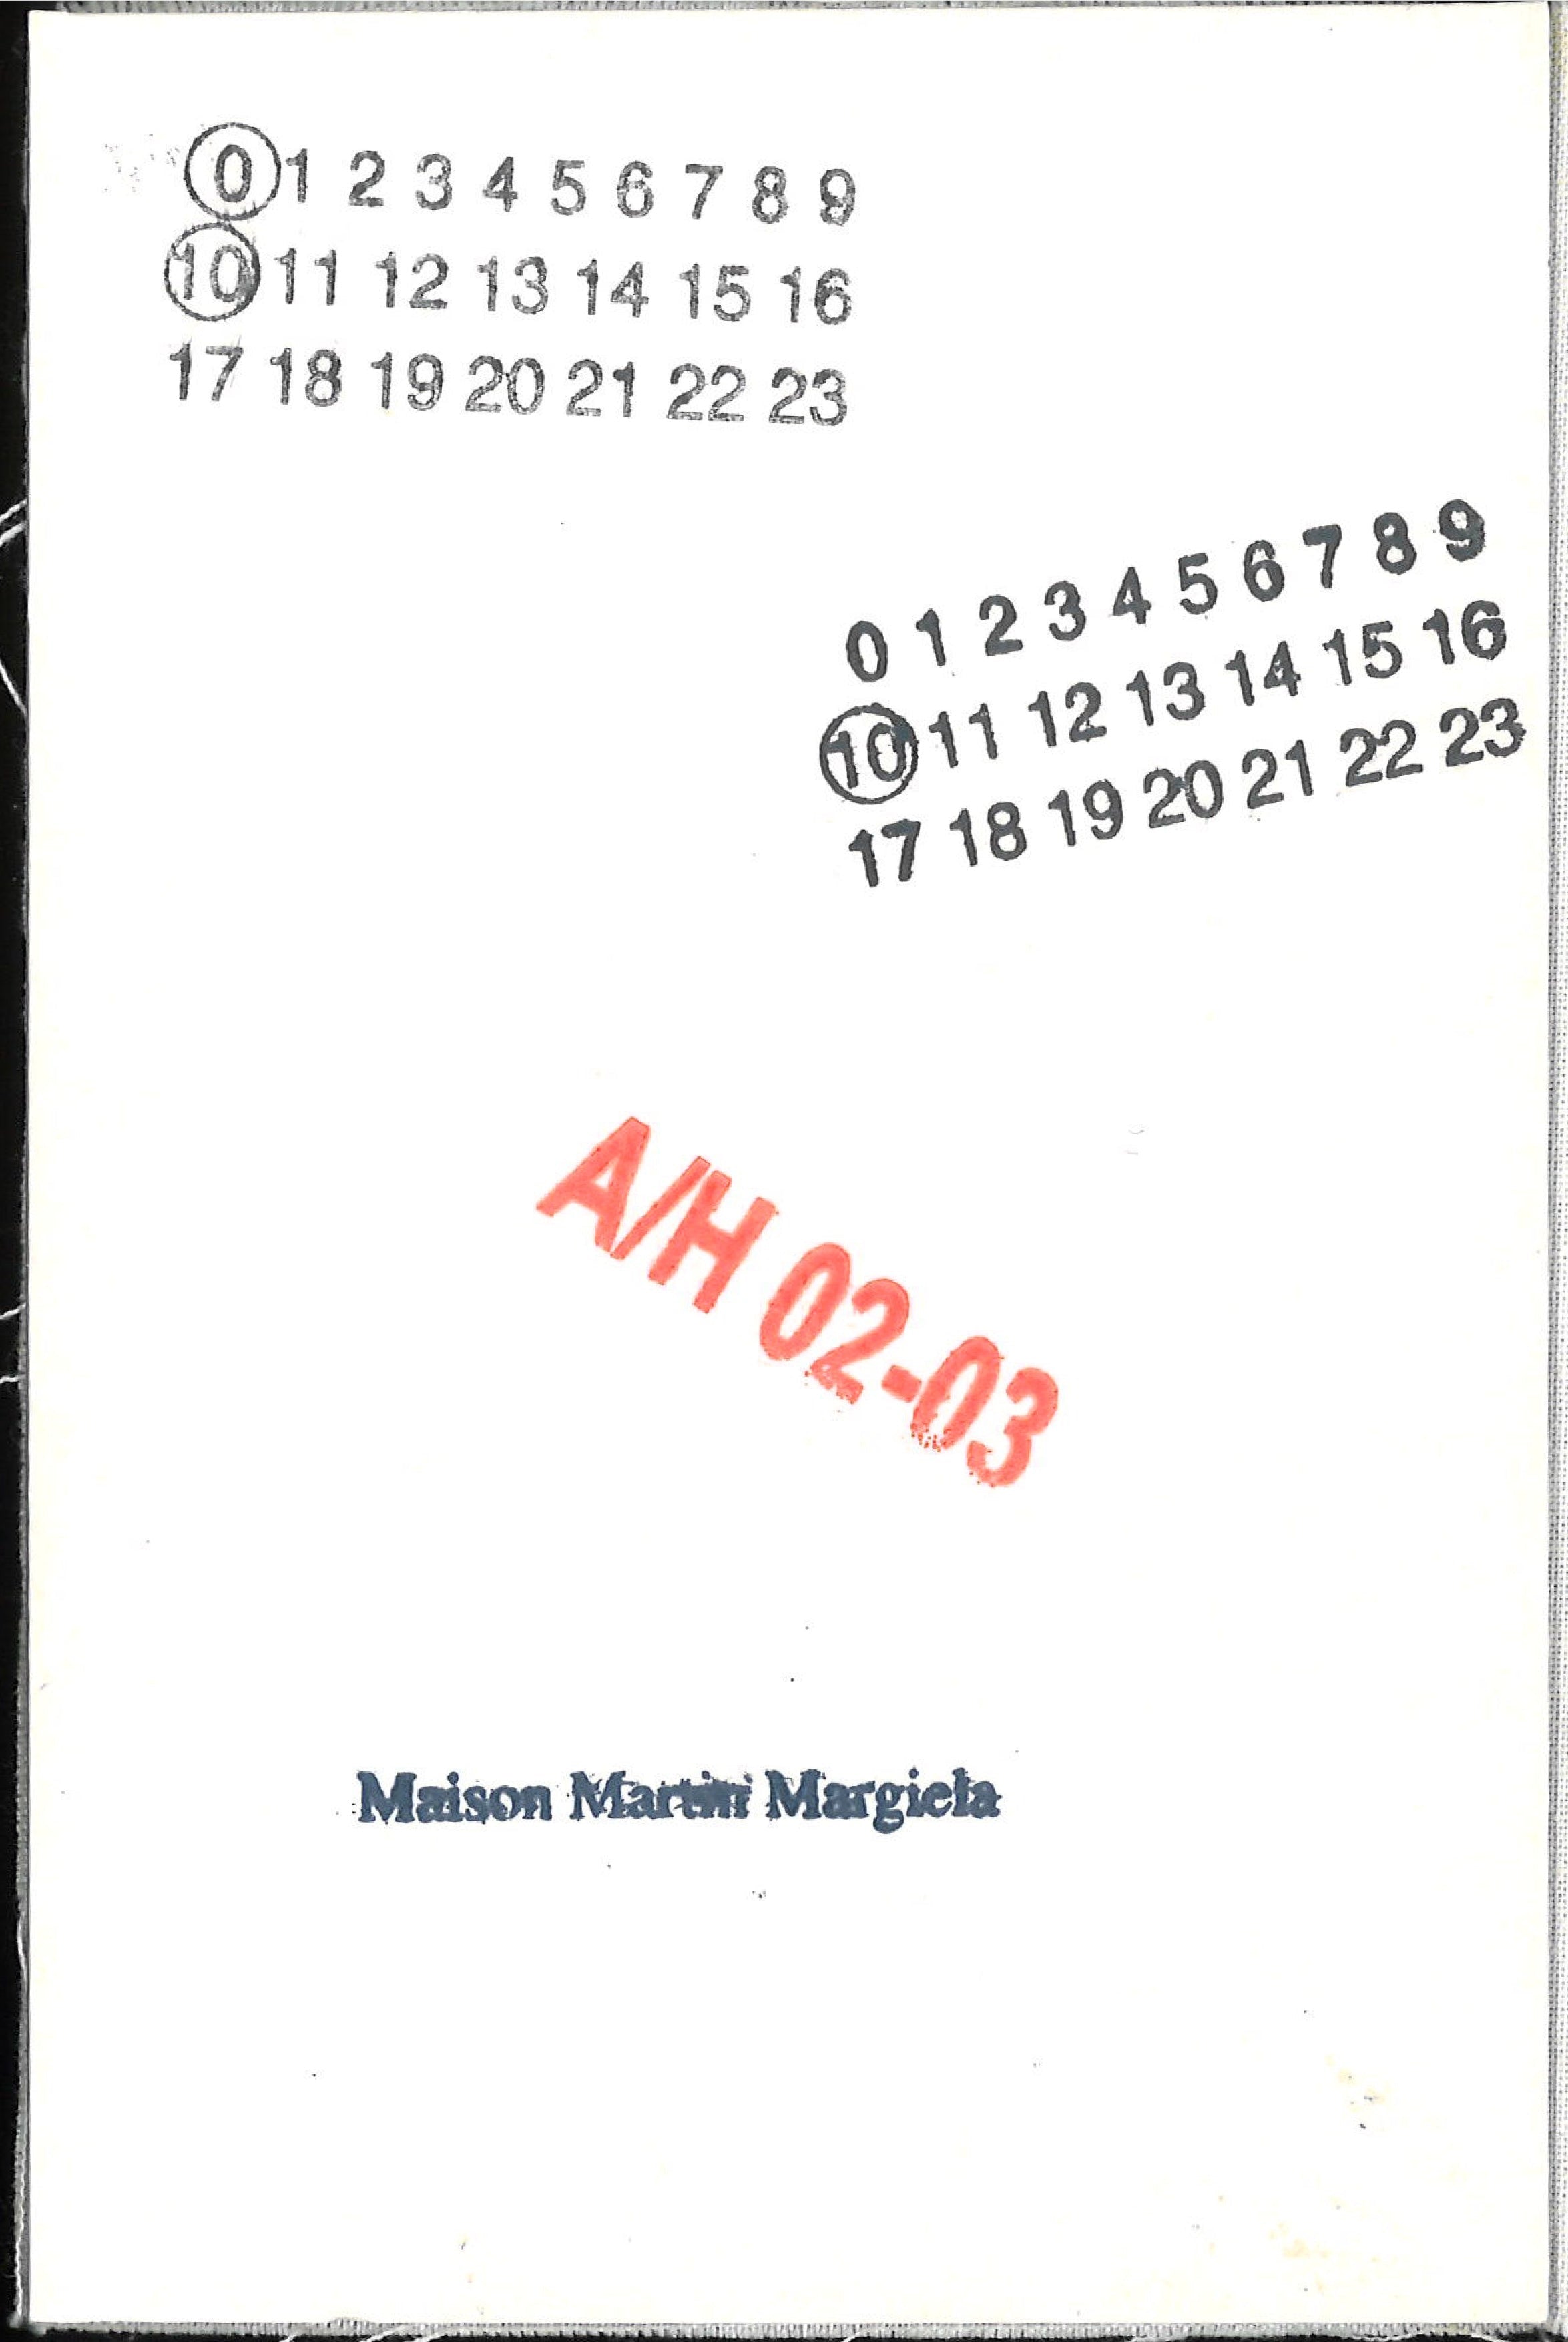 Maison Martin Margiela Lookbook
Menswear Collection Autumn/Winter 2002-03